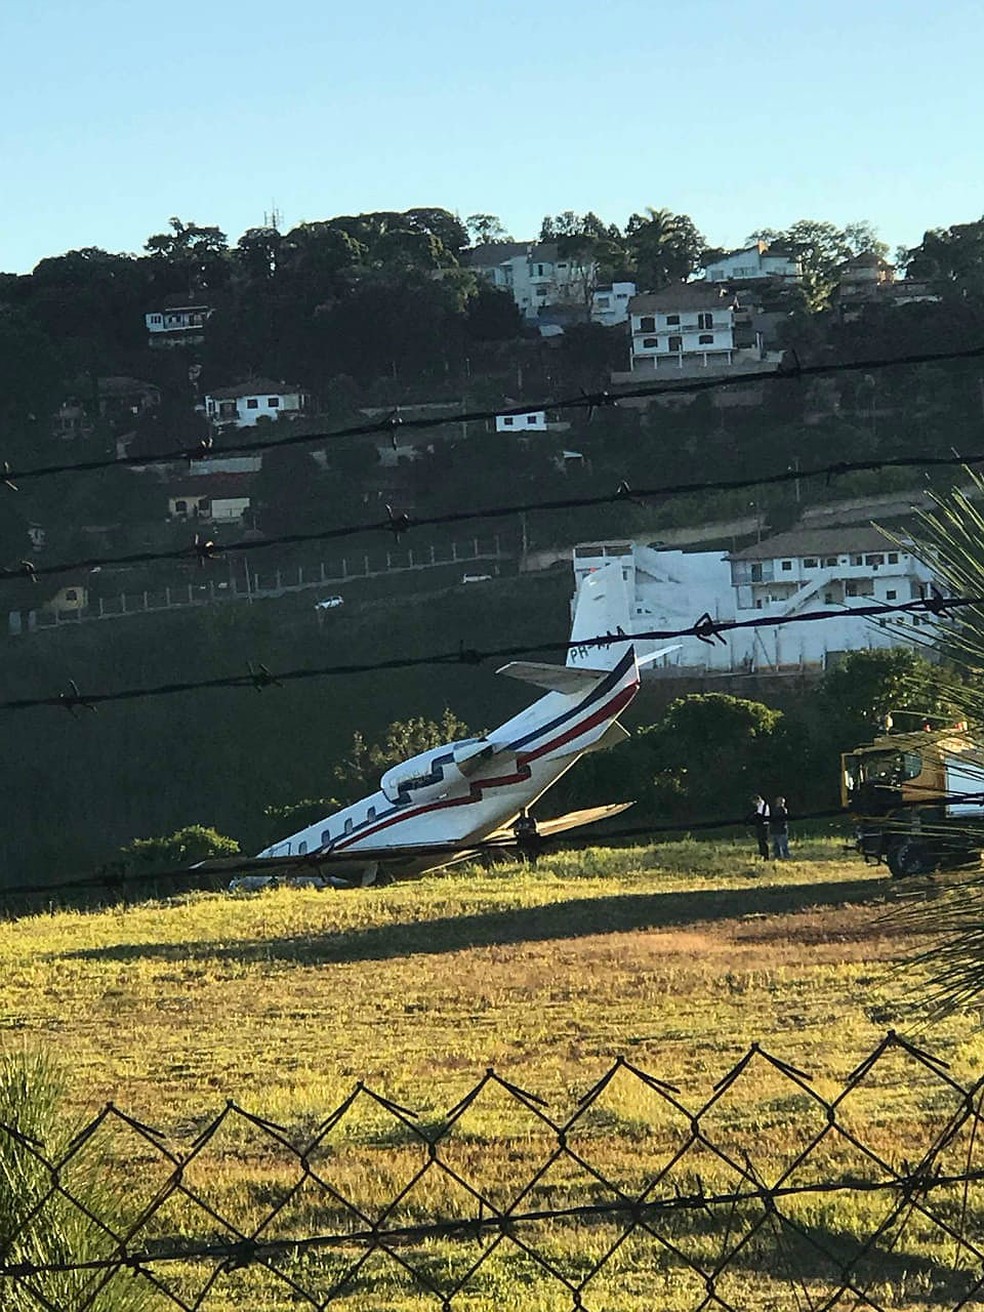 AviÃ£o do DJ Alok saiu da pista no procedimento de decolagem; fÃ£ registrou incidente (Foto: Sarah Carvalho/Arquivo Pessoal)